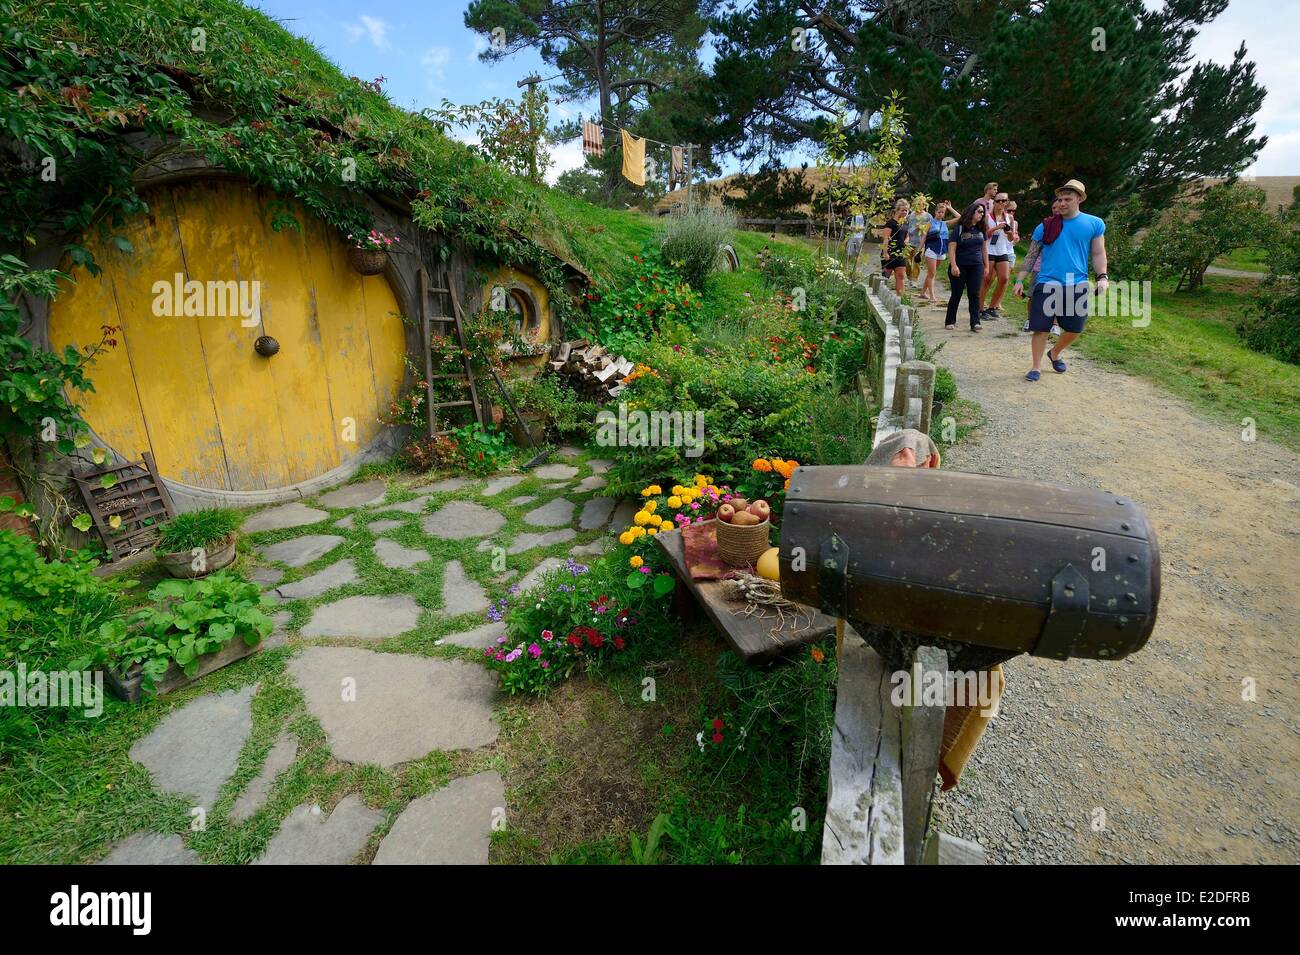 Nuova Zelanda Isola del nord Matamata Hobbiton the hobbit villaggio costruito per la visione del film Il Signore degli Anelli di Peter Jackson Foto Stock